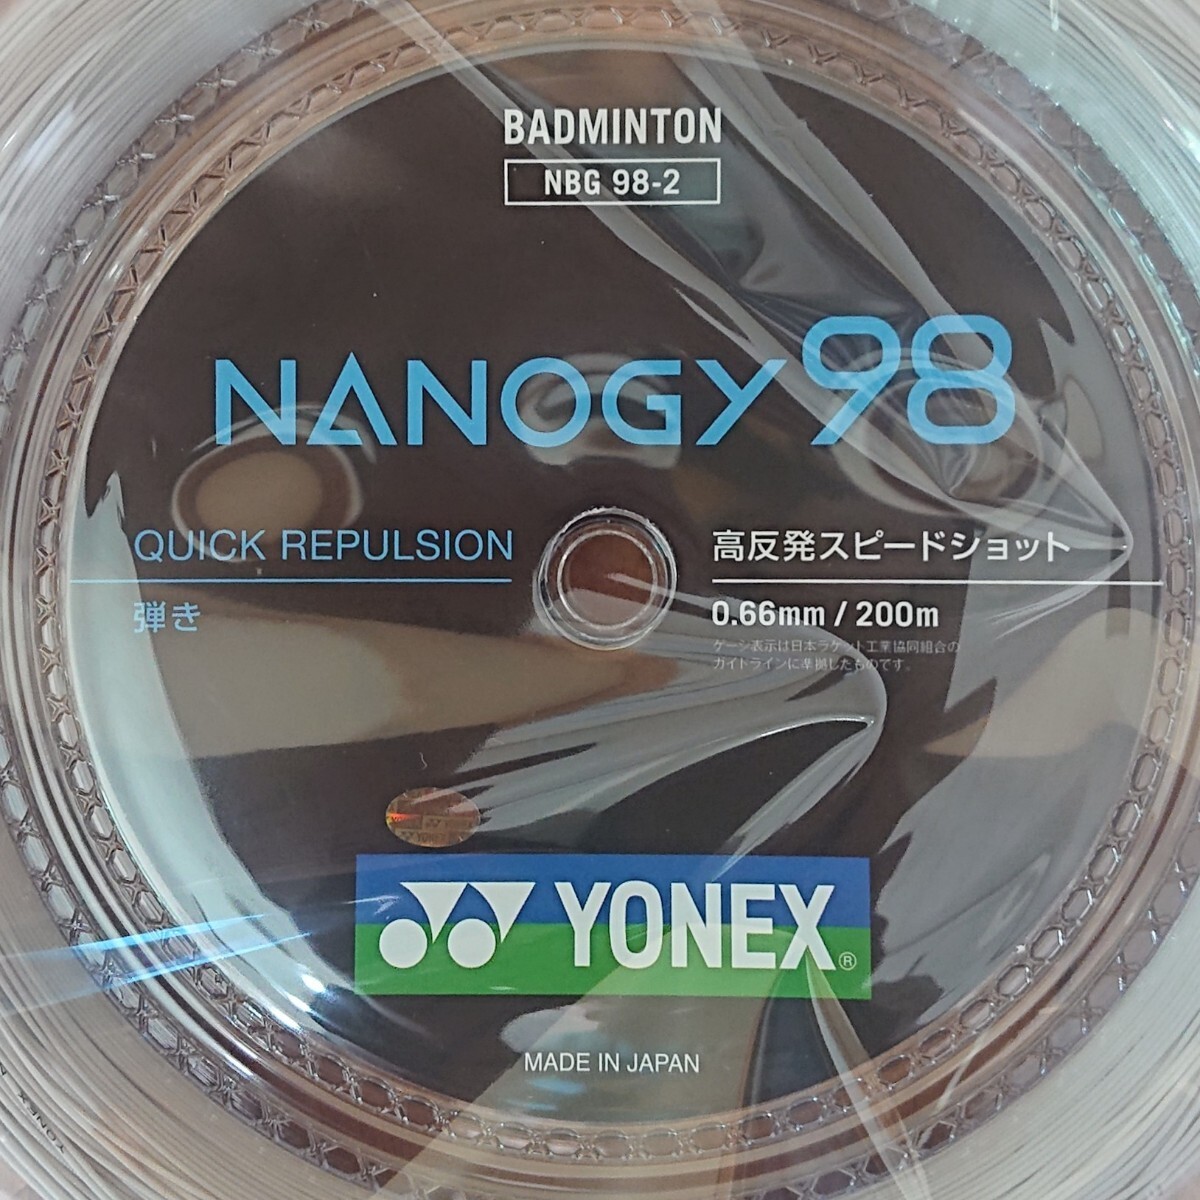  nano ji-98(NBG98-2) 200m roll Yonex (YONEX) цвет : silver gray 